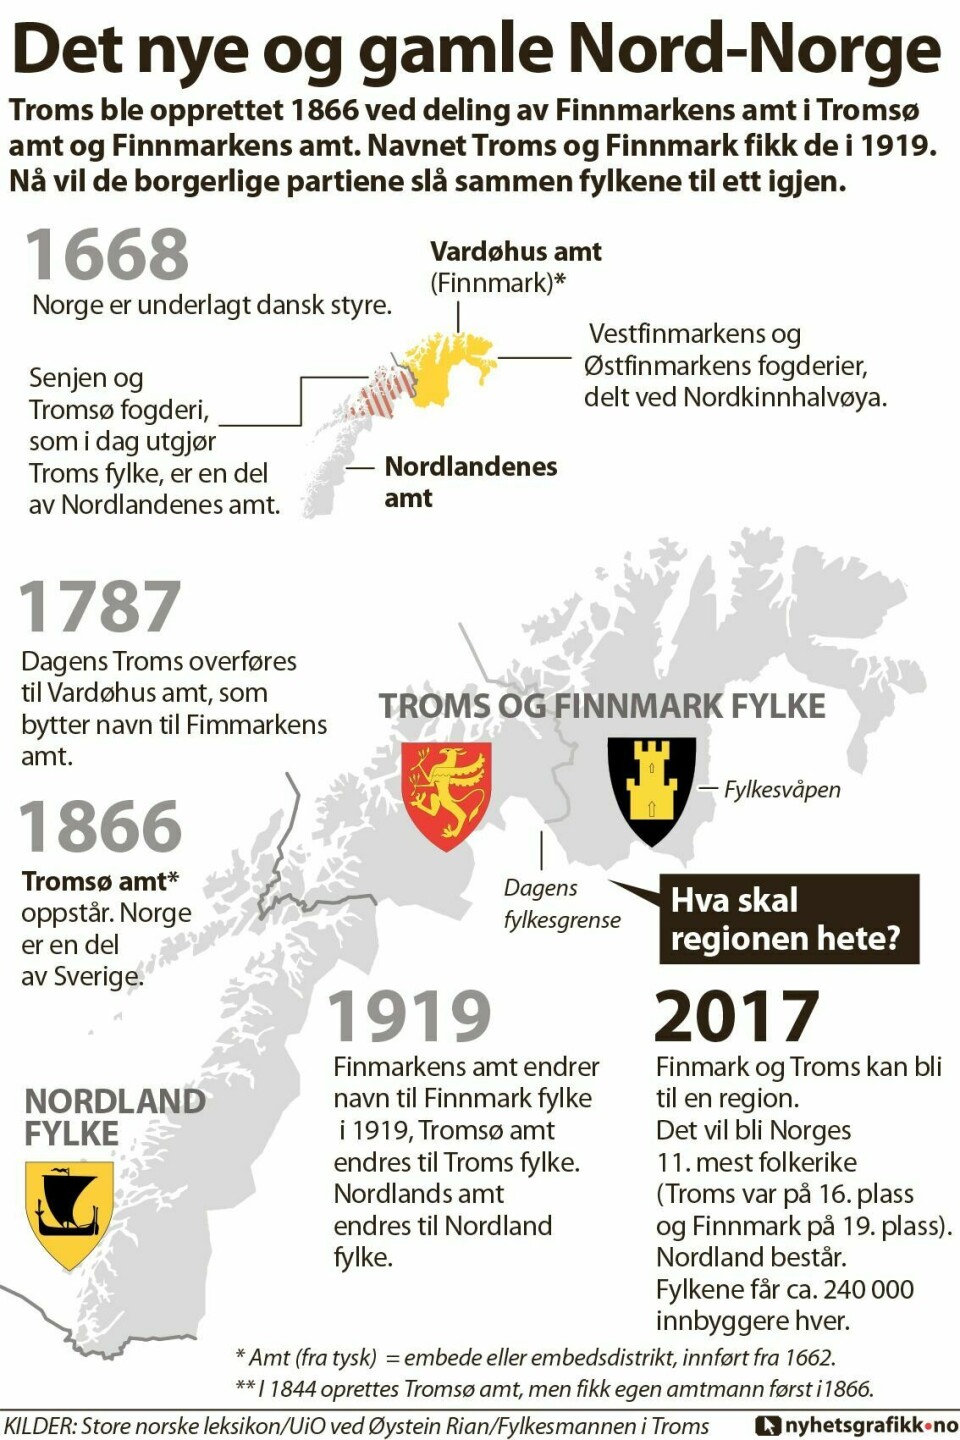 TROMS OG FINNMARK: Troms ble opprettet 1866 ved deling av Finnmarkens amt i Tromsø amt og Finnmarkens amt. Navnet Troms og Finnmark fikk de i 1919. Nå vil de borgerlige partiene slå sammen fylkene til ett igjen. (Grafikk: Nyhetsgrafikk.no)